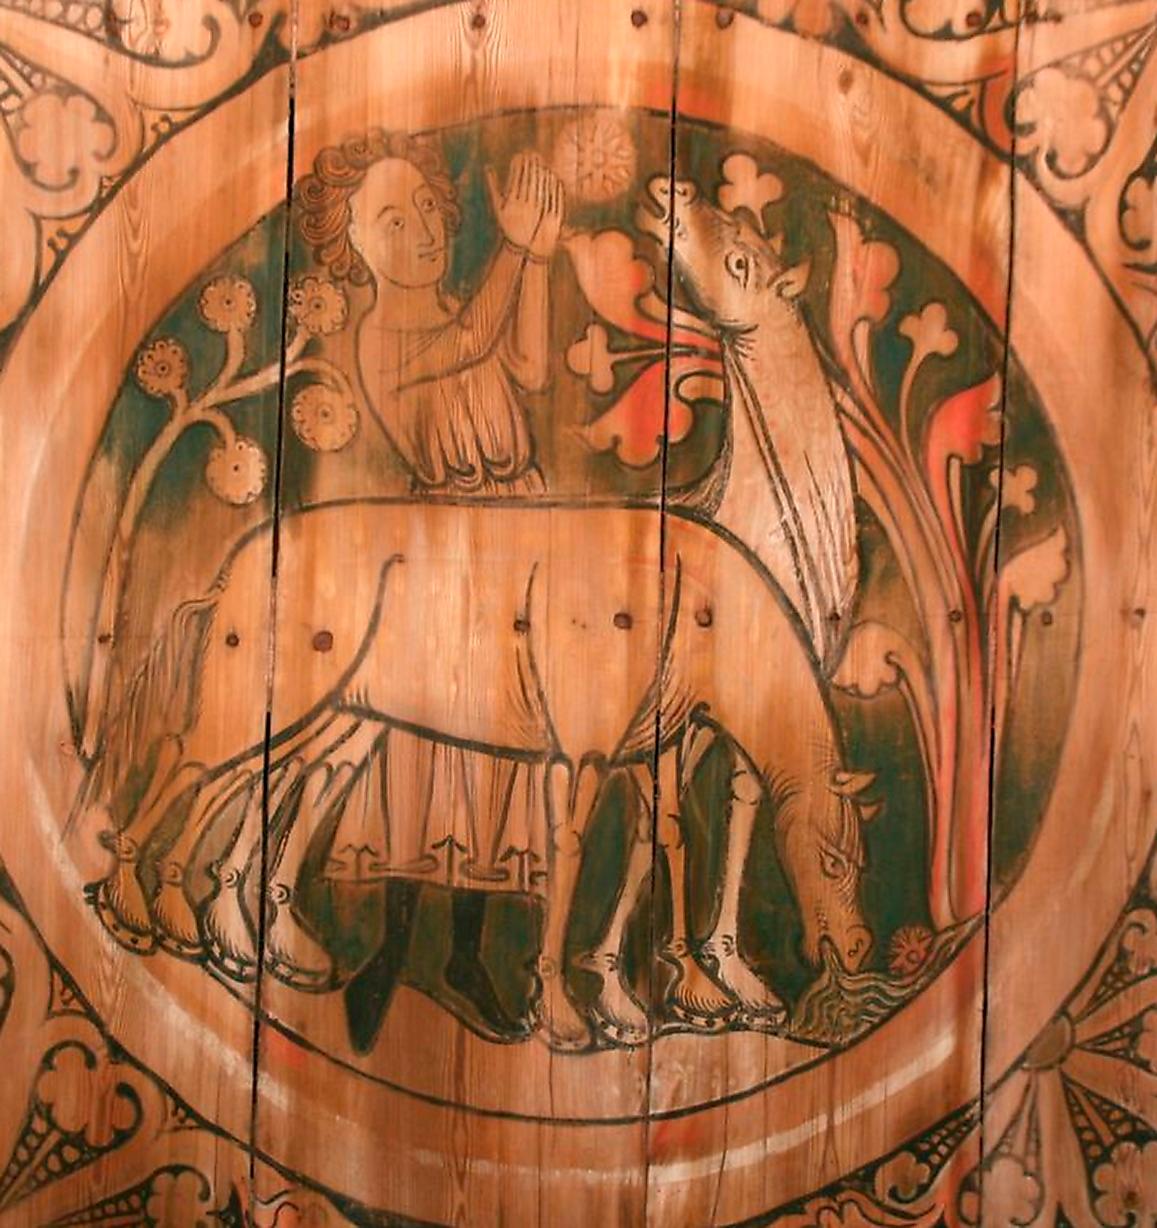 Staffan stalledräng vattnar fålar i medeltida takmålning från 1200-talet i Dädesjö gamla kyrka i Småland.